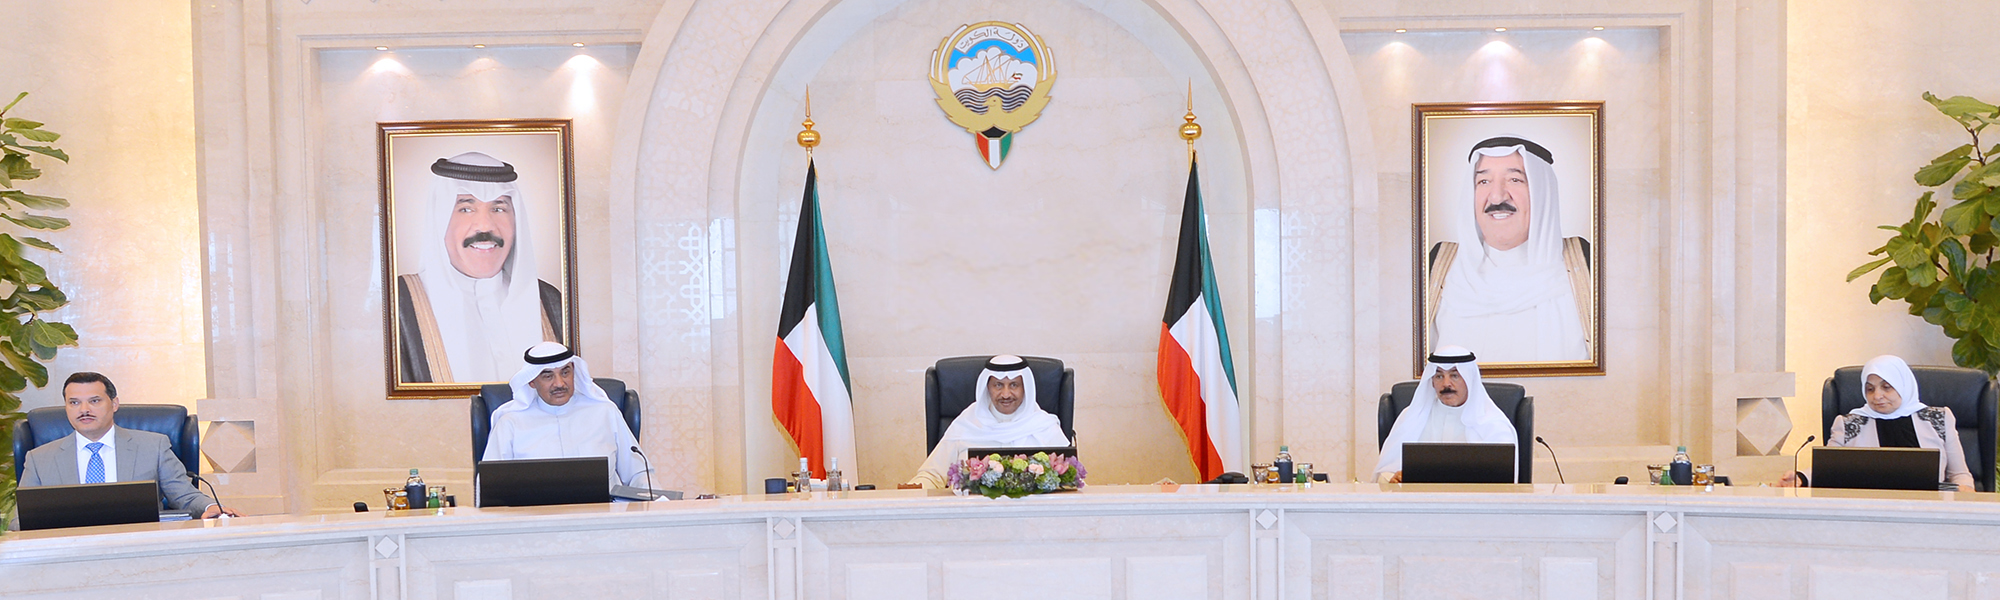 His Highness Prime Minister Sheikh Jaber Al-Mubarak Al-Hamad Al-Sabah presides the cabinet's weekly session